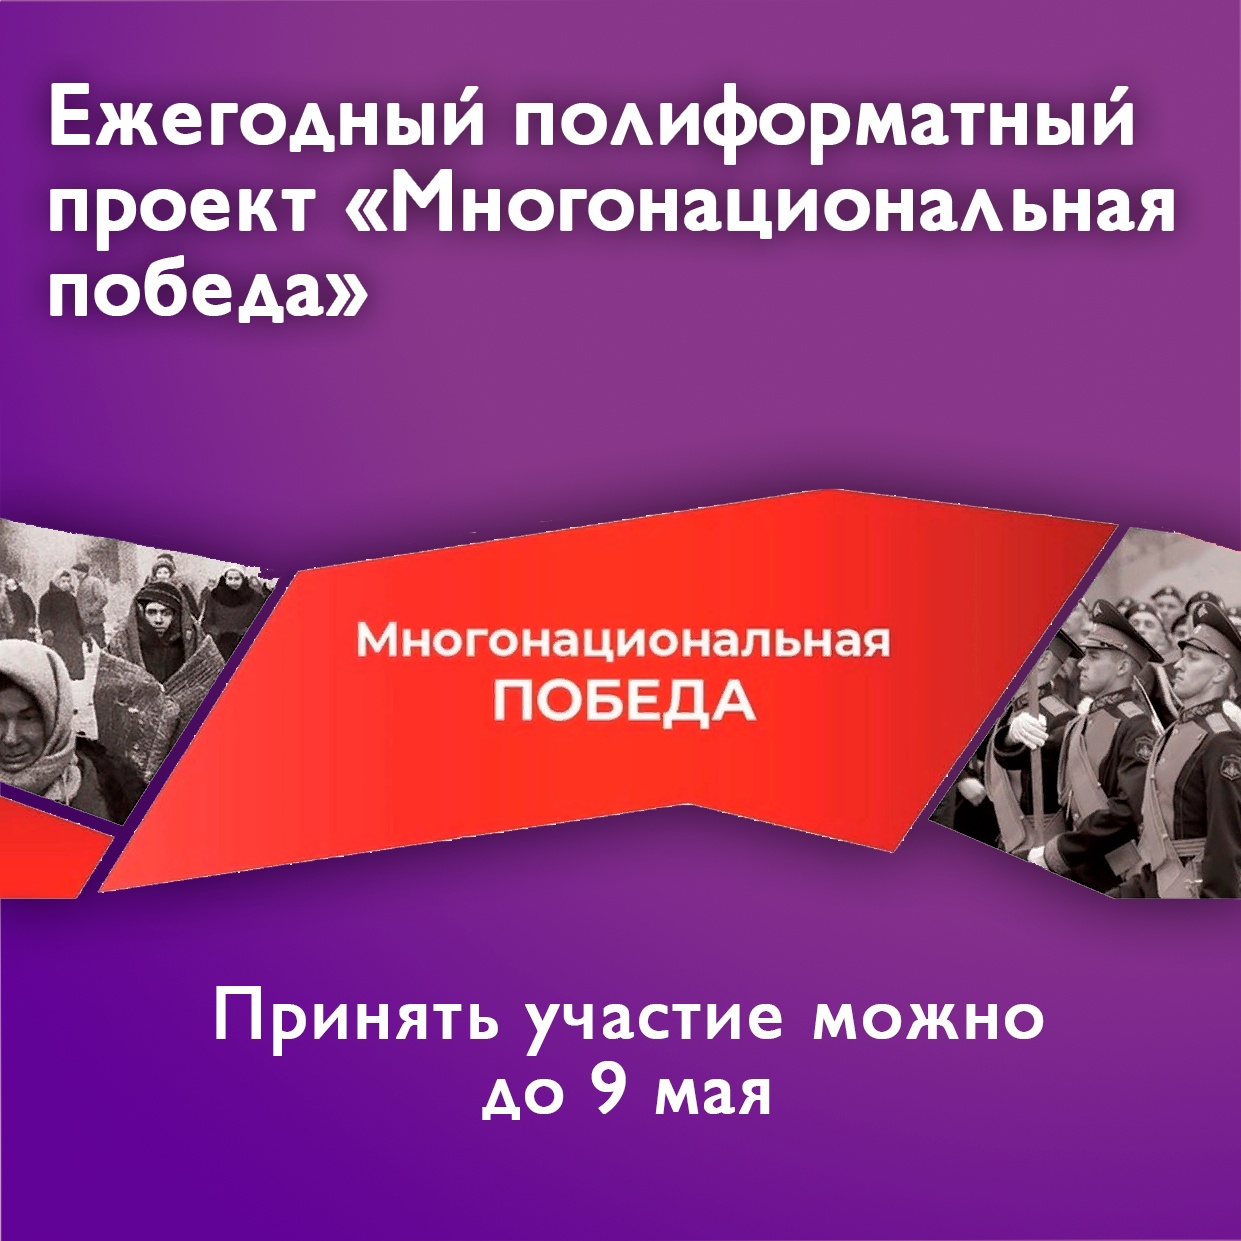 Уфимцев приглашают принять участие в проекте «Многонациональная Победа»